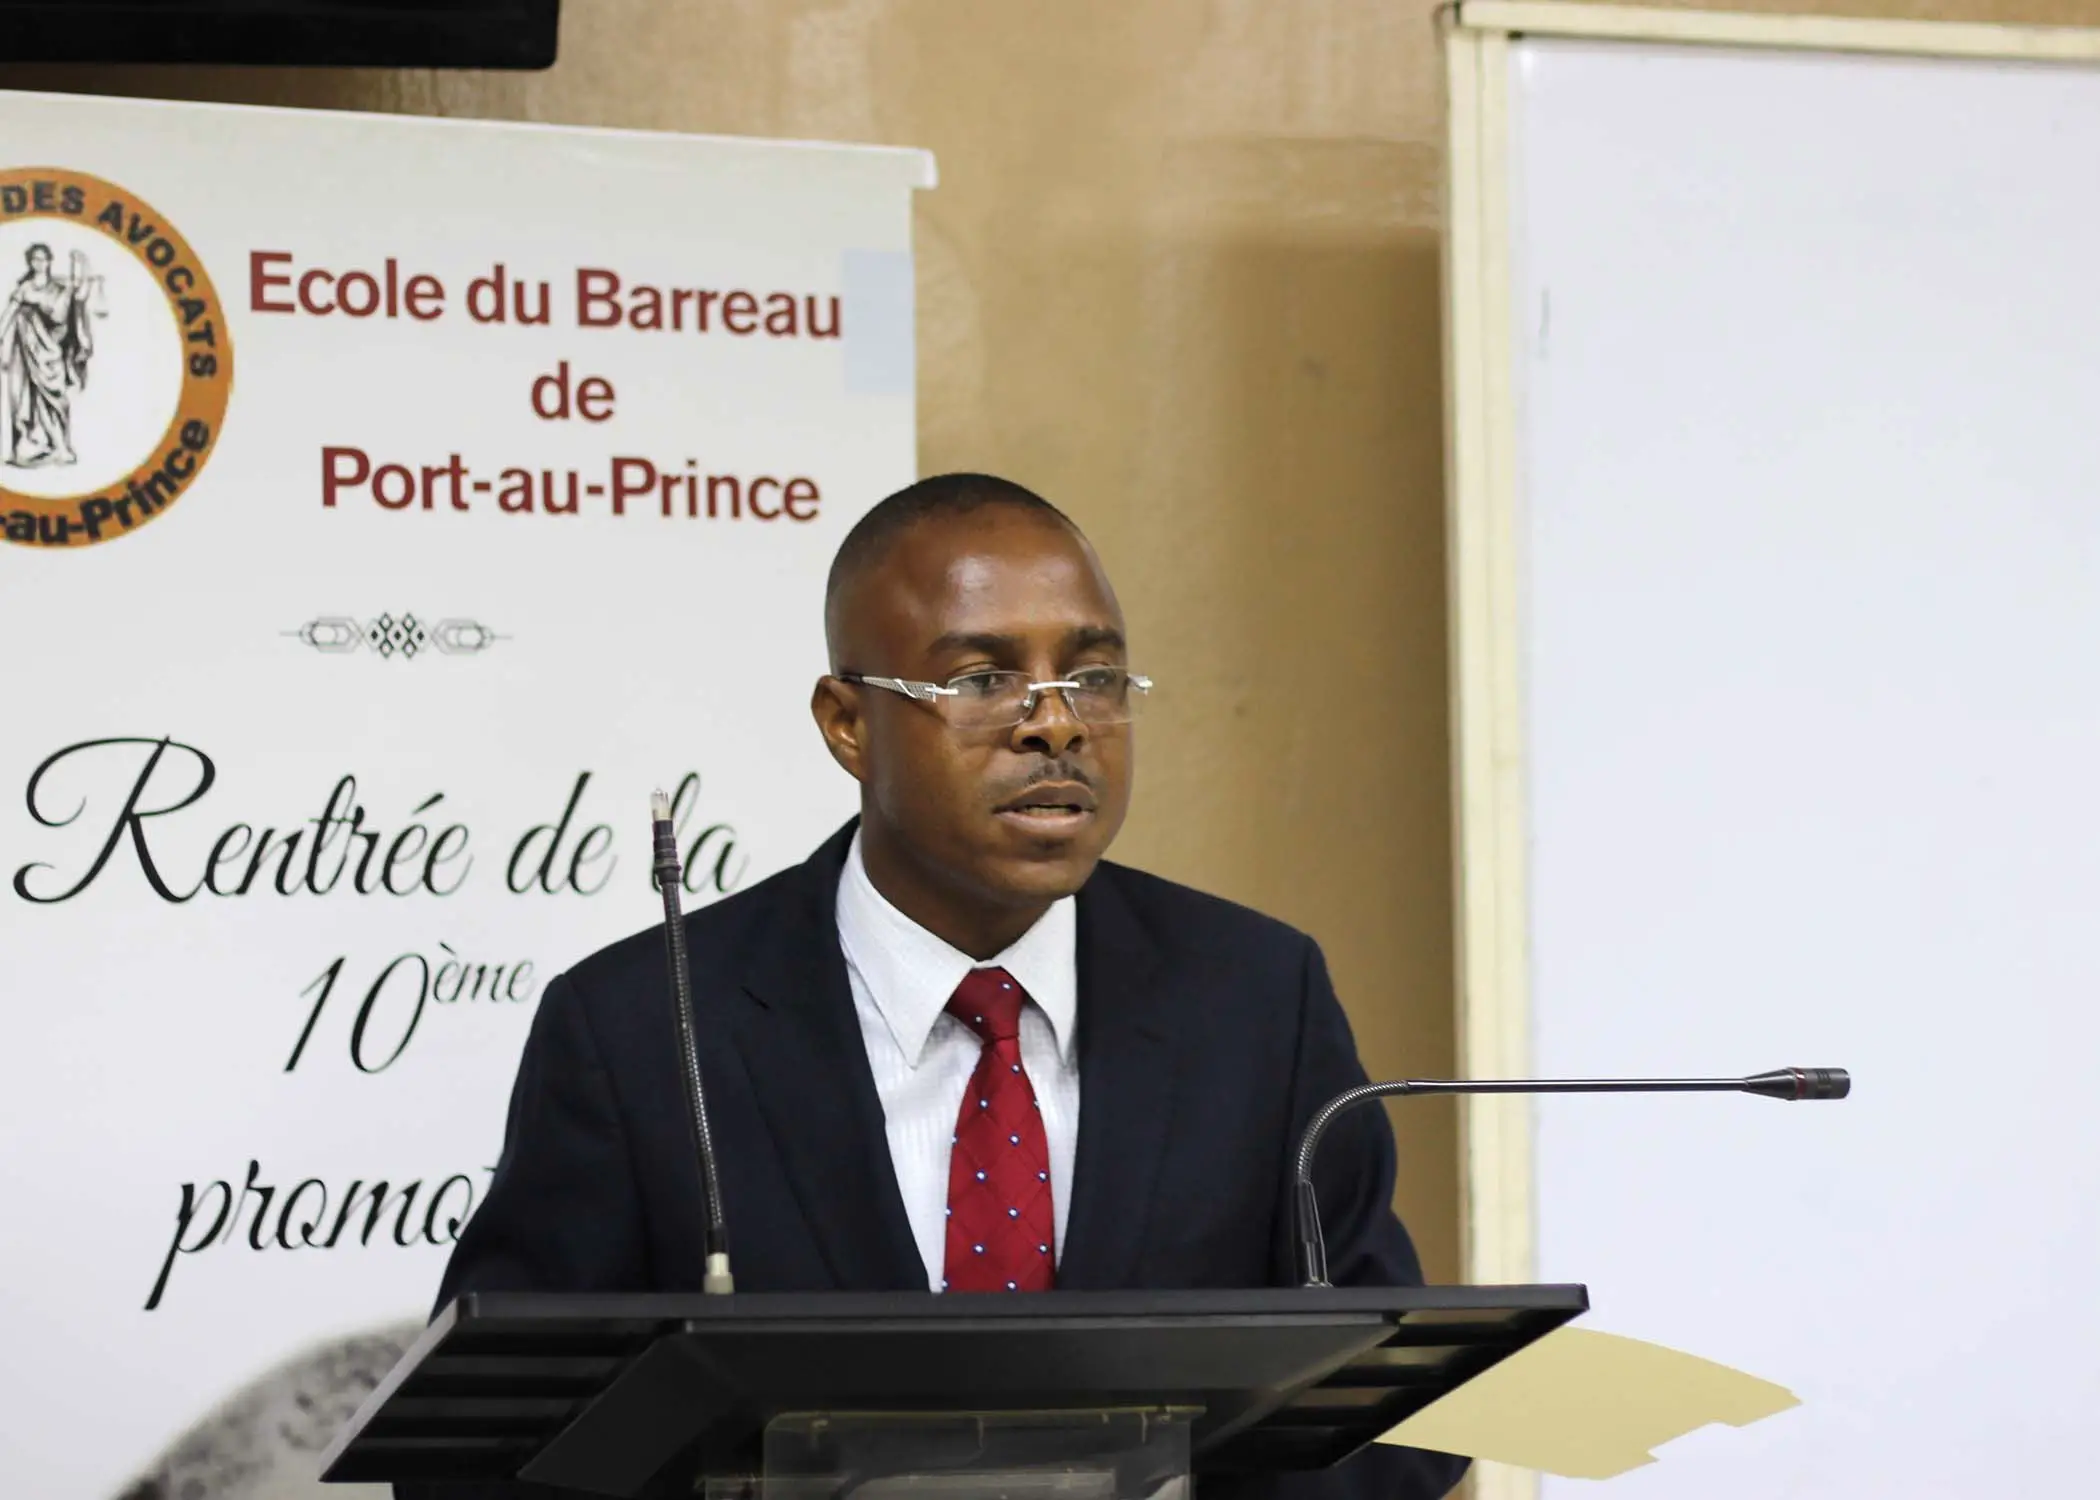 Le BAL (Bureau d'Assistance Légale) de Port-au-Prince a dressé ce lundi un bilan de son premier trimestre d'activité. "753 dossiers sont traités dont 274 libérations", selon Me Vital Junior Dessources, coordonateur du BAL.